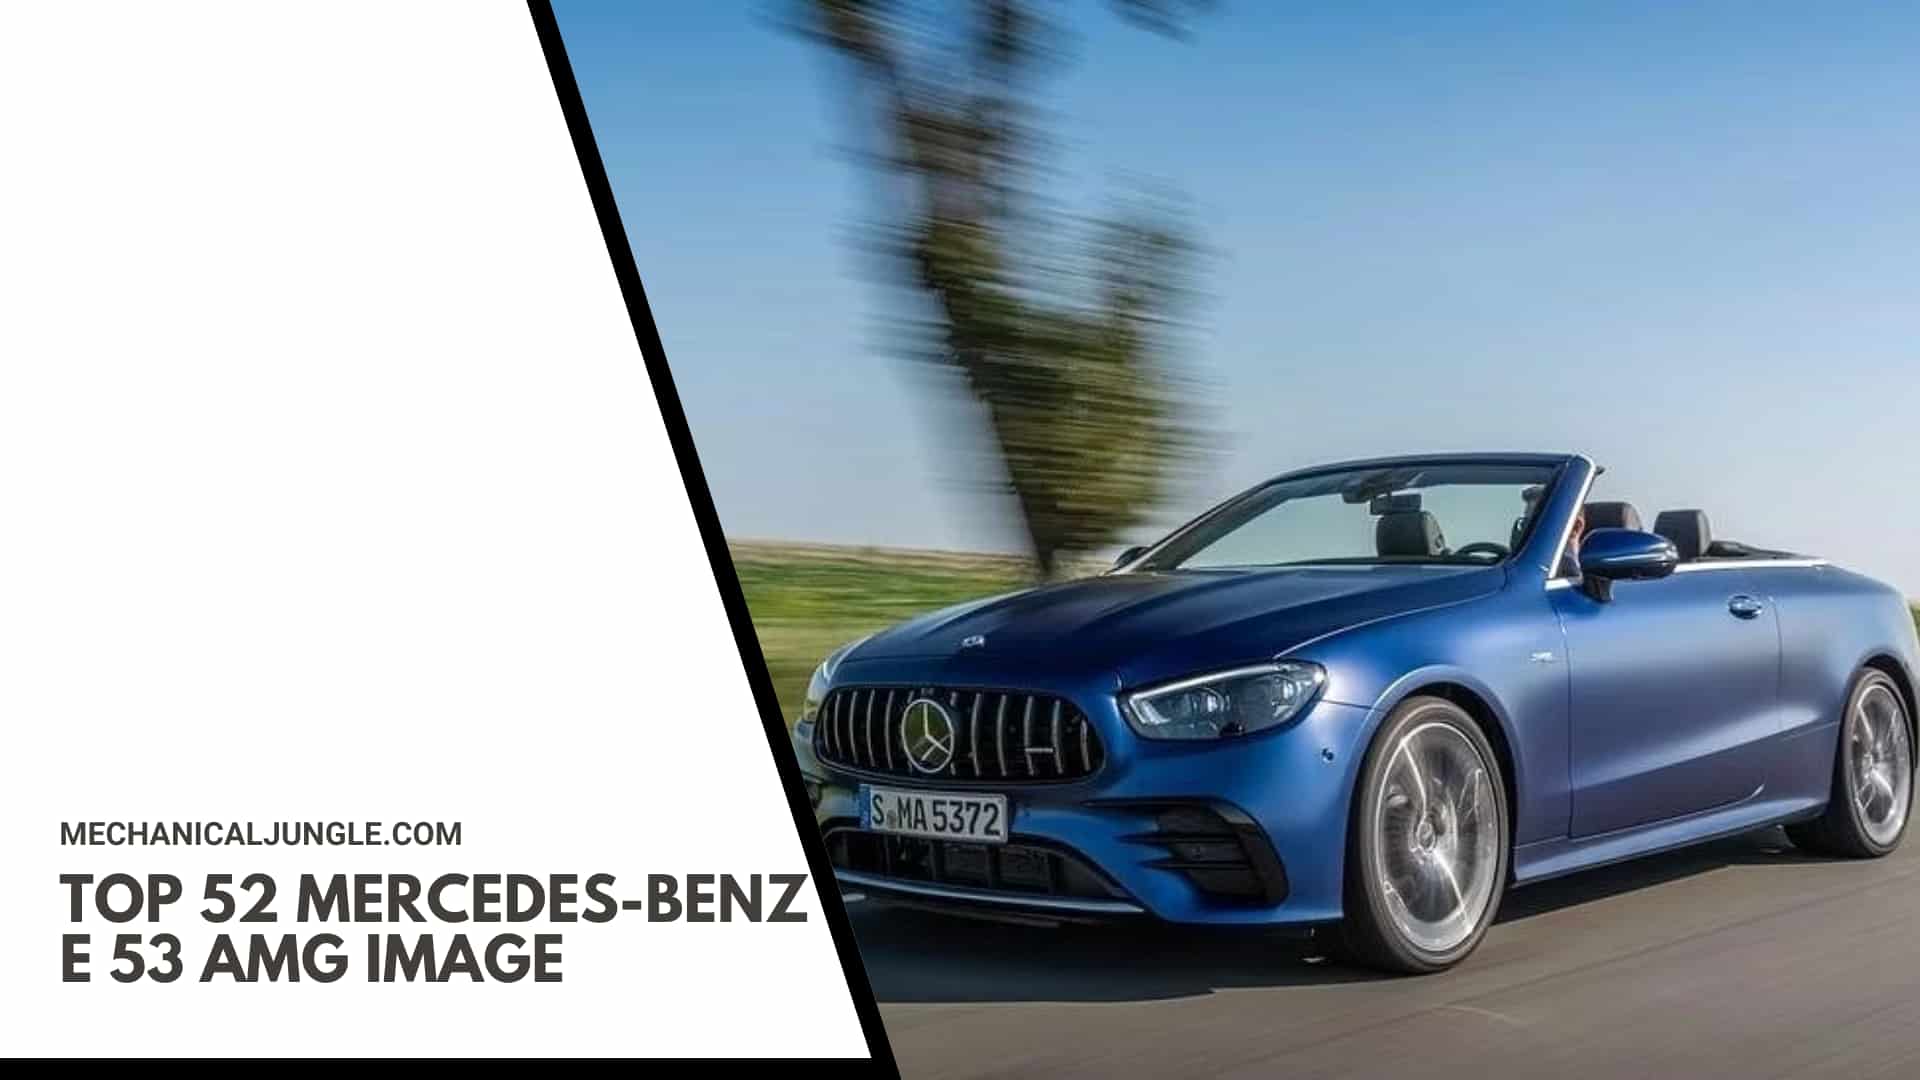 Top 52 Mercedes-Benz E 53 AMG Image